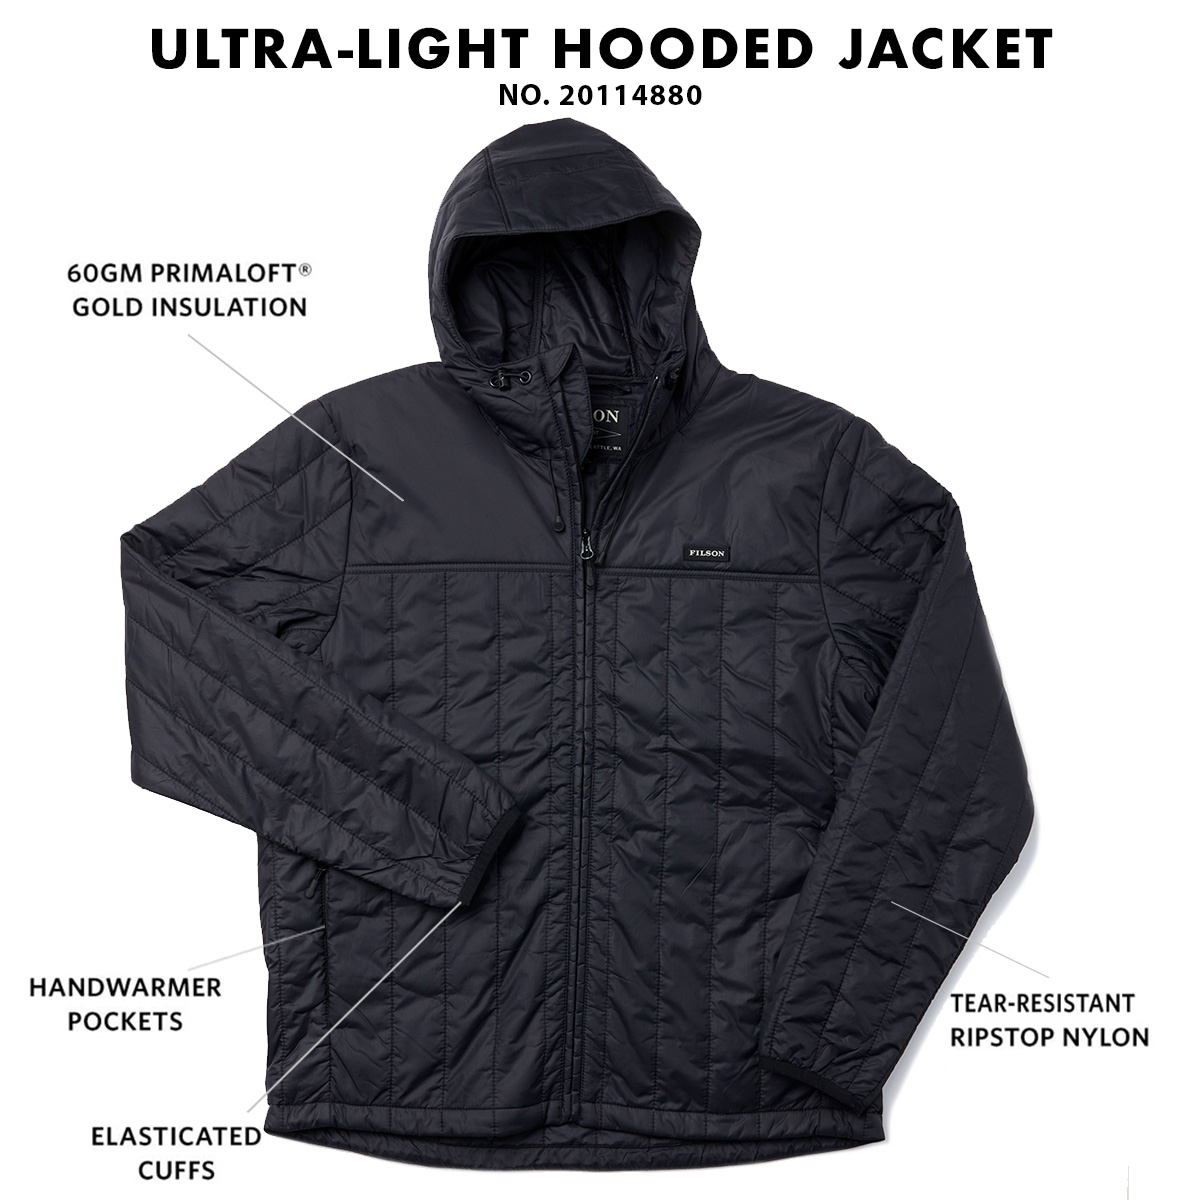 Filson Ultralight Hooded Jacket Black, Winddicht, warm, atmungsaktiv und komprimierbar auch wenn es nass ist